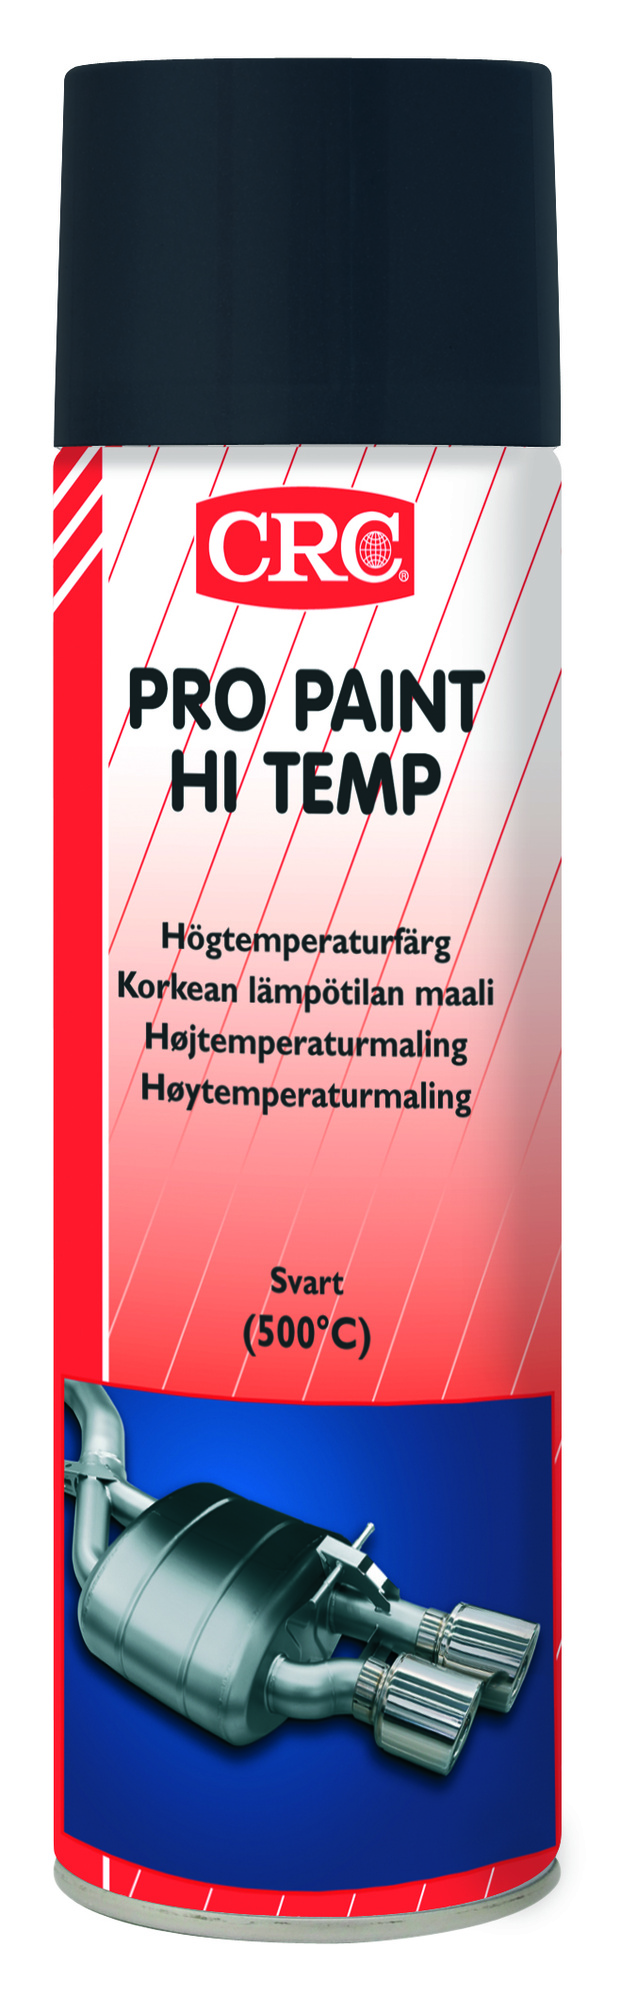 Sprayfärg Pro Paint High Temp Svart 500 ml